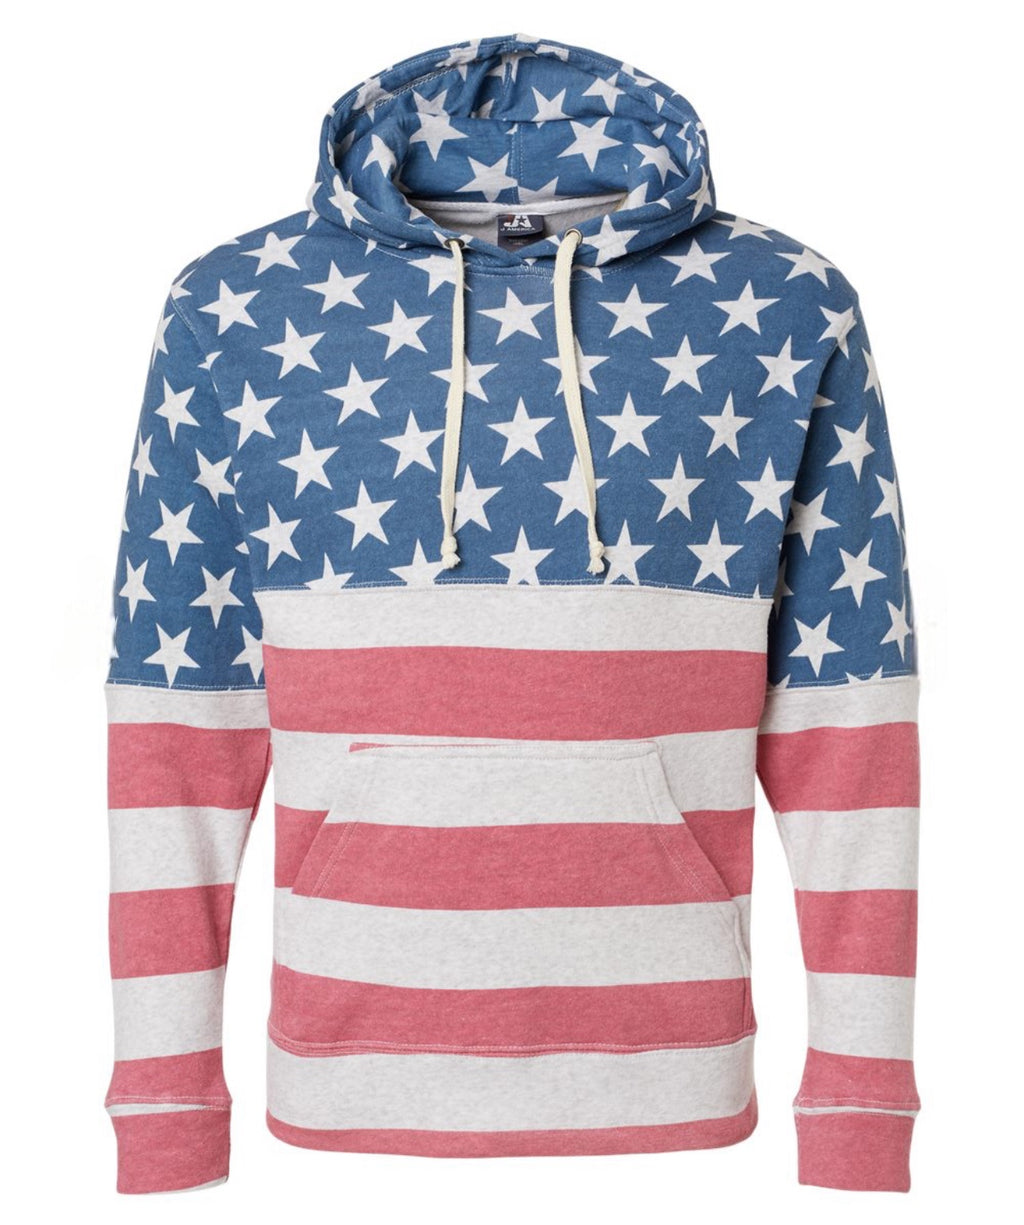 American flag hoodie adult Unisex